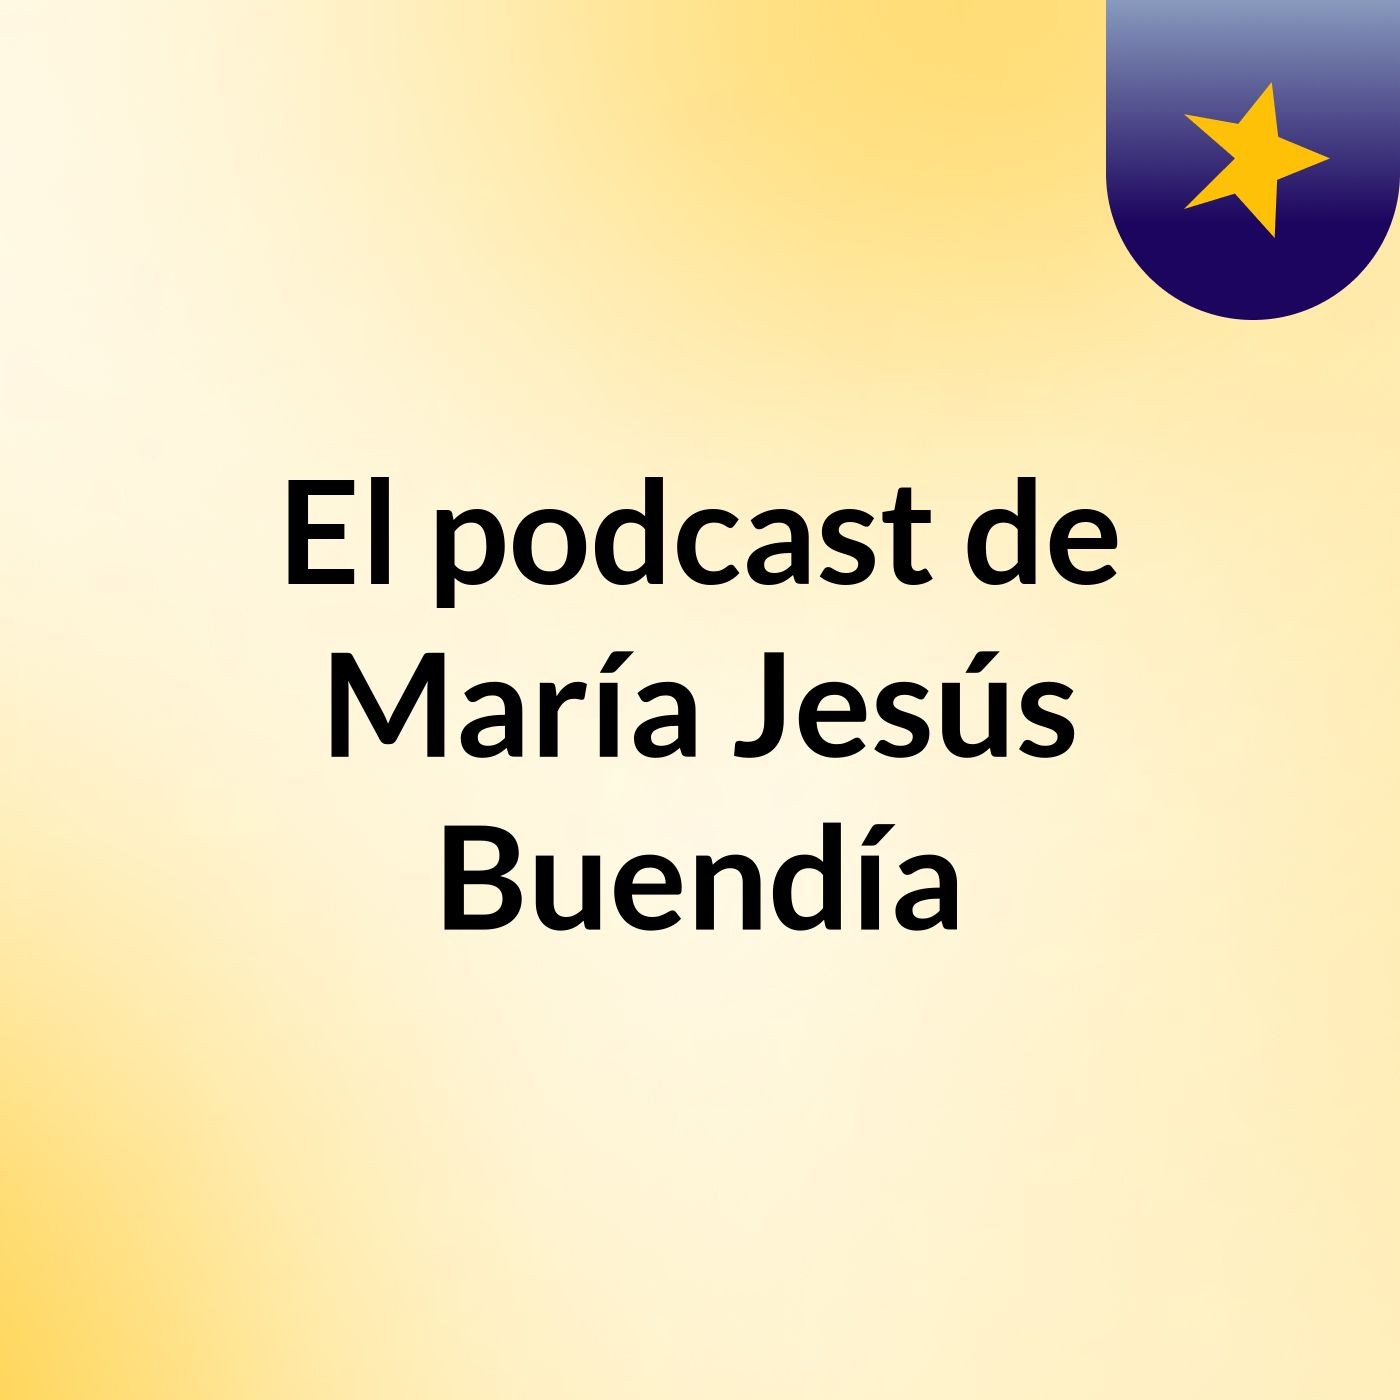 El podcast de María Jesús Buendía